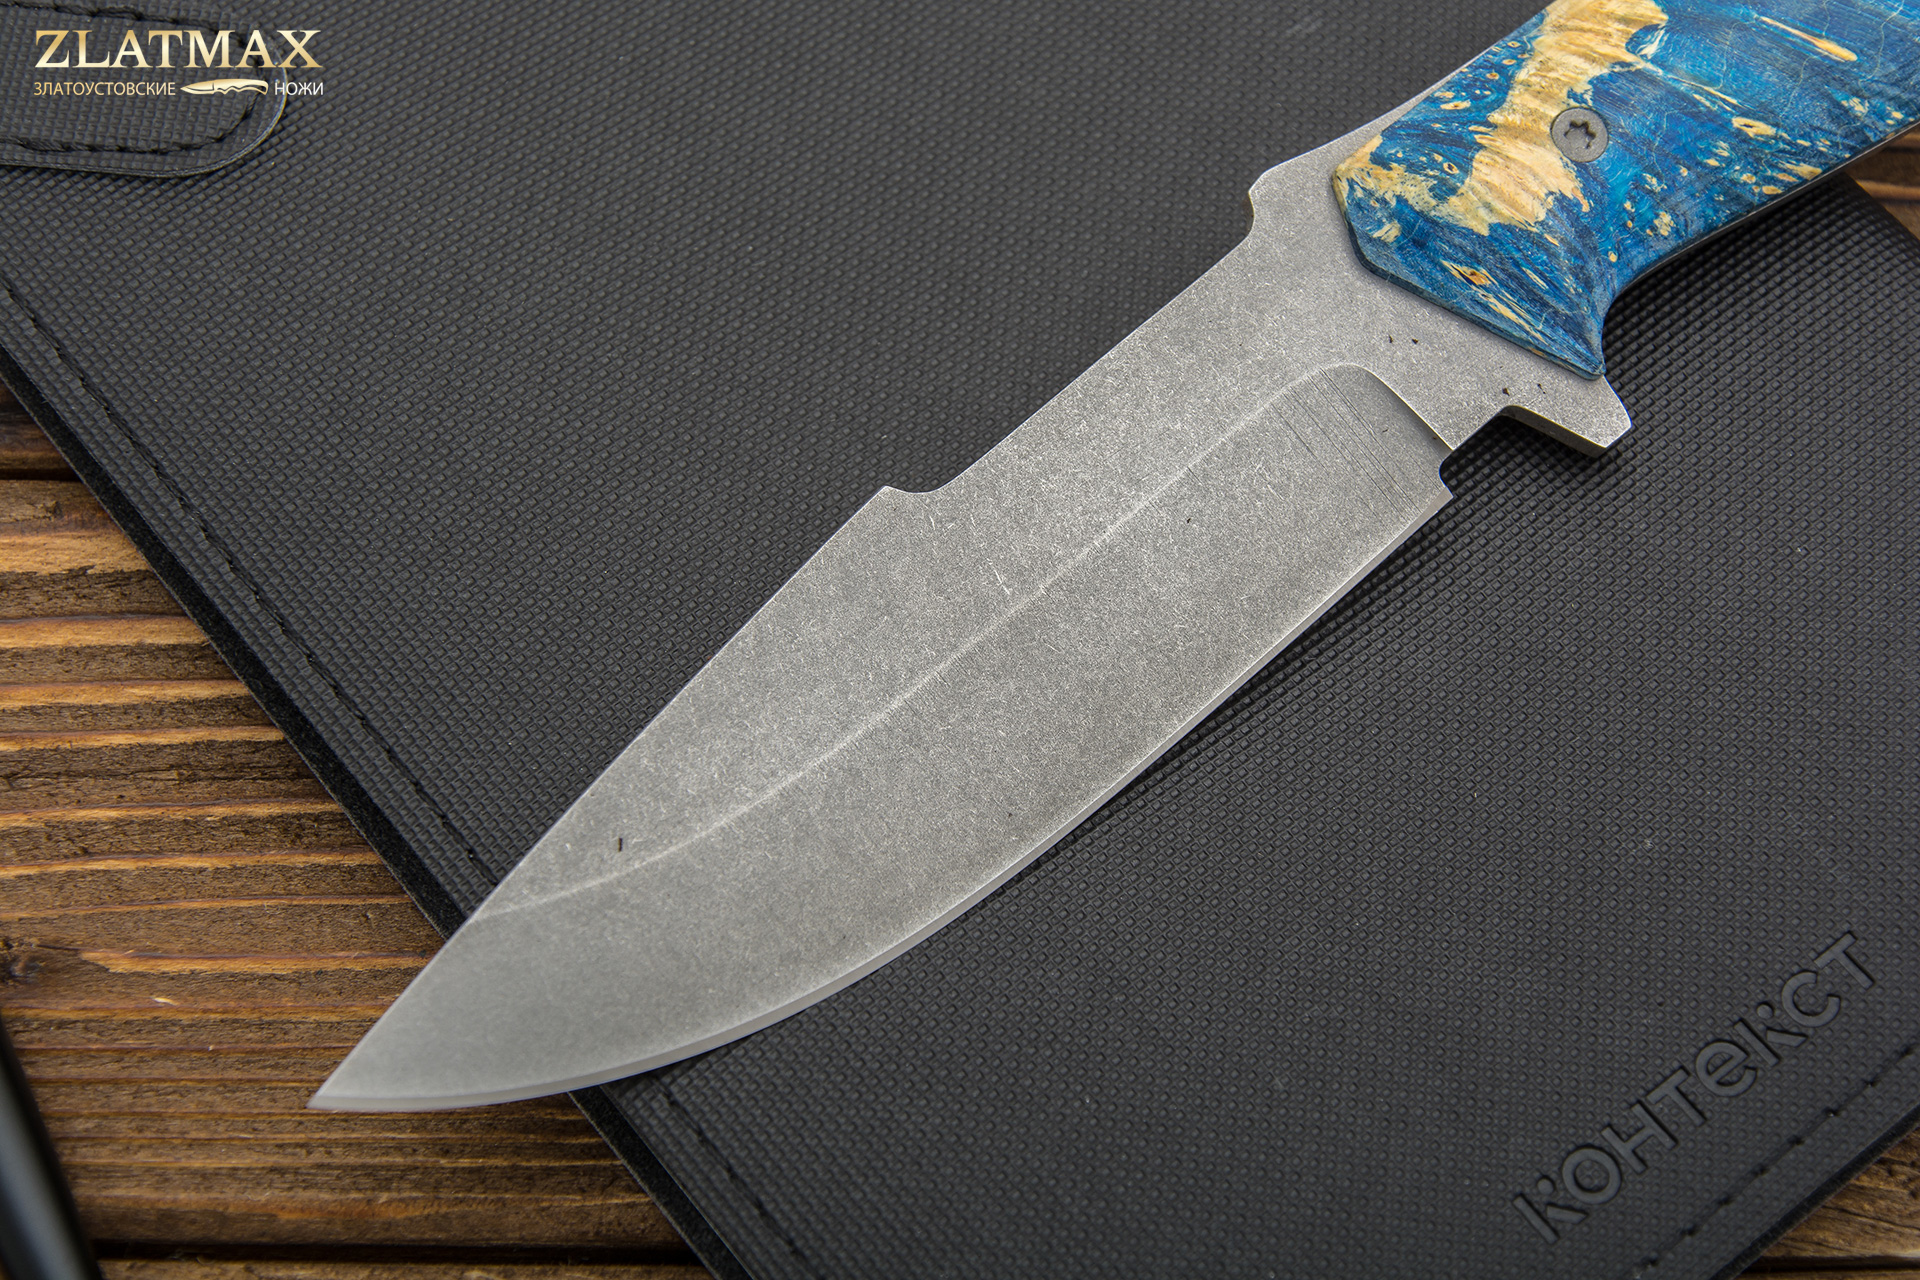 Нож Егерь (K110 Böhler, Накладки стабилизированный кап клёна, Обработка клинка Stonewash)